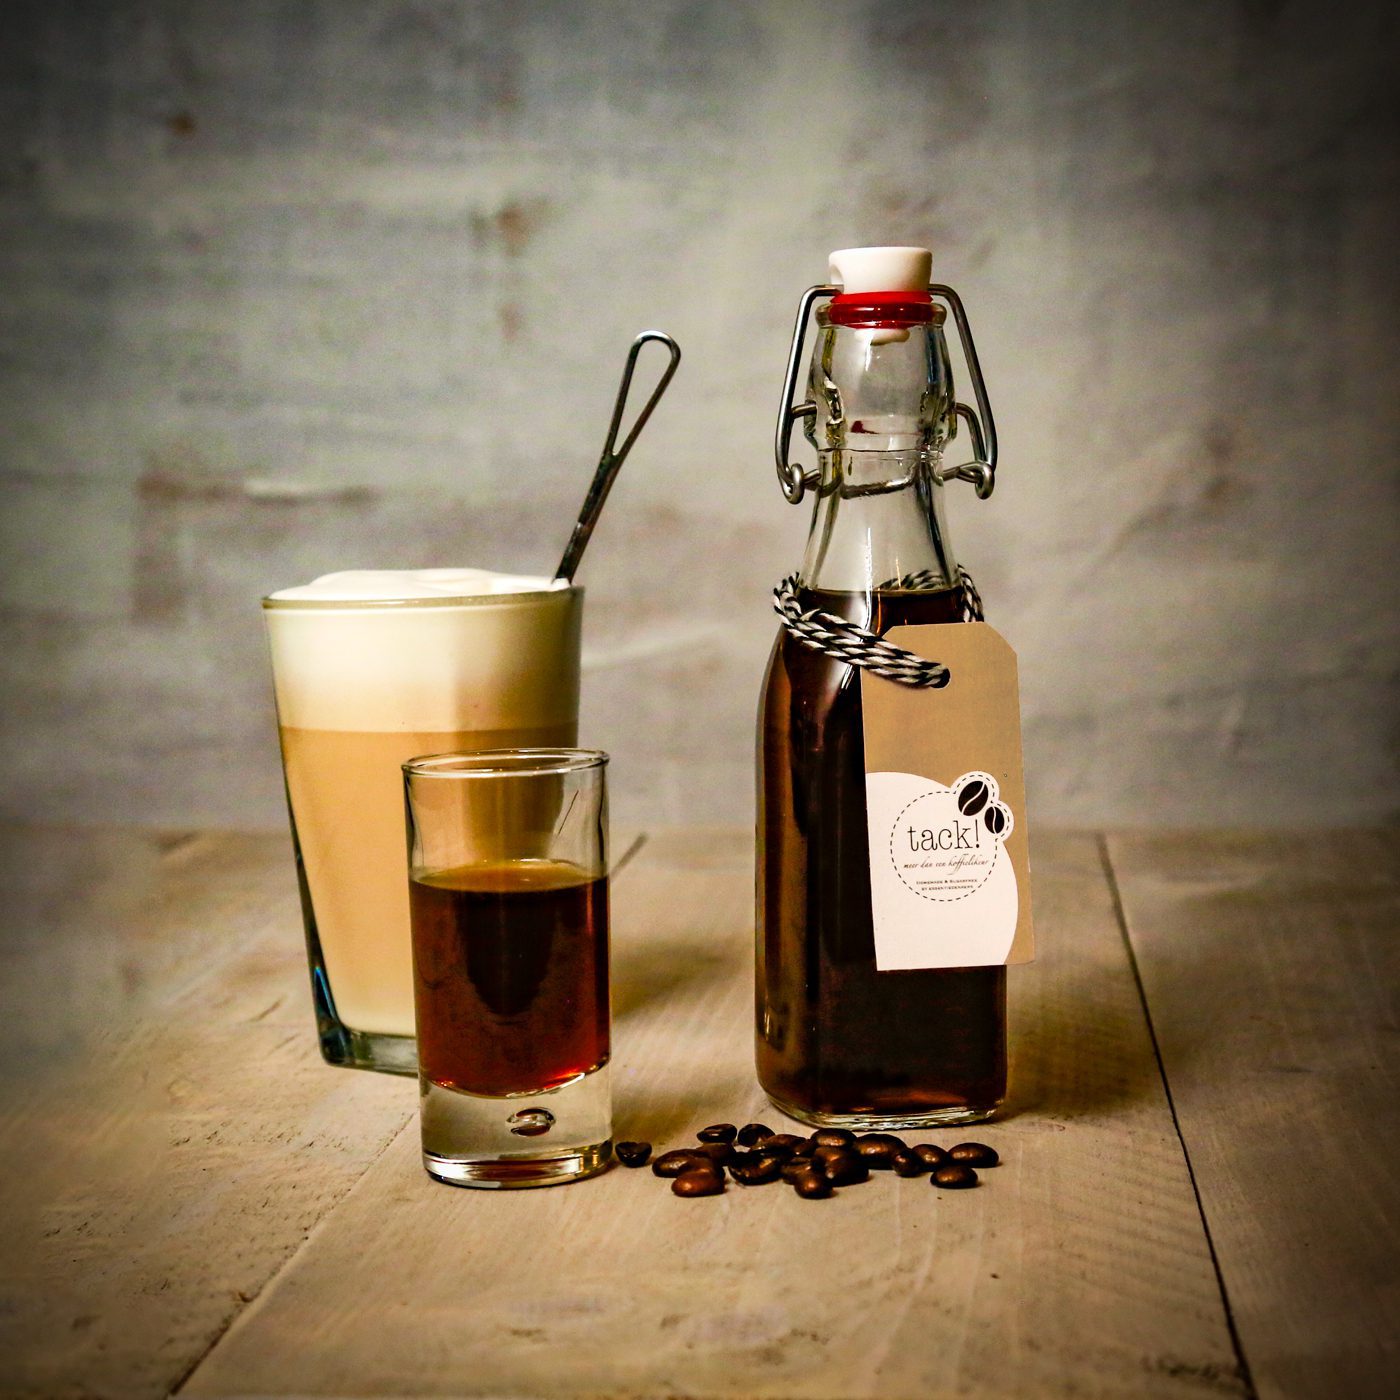 Featured image for “Koffie met een kick!”